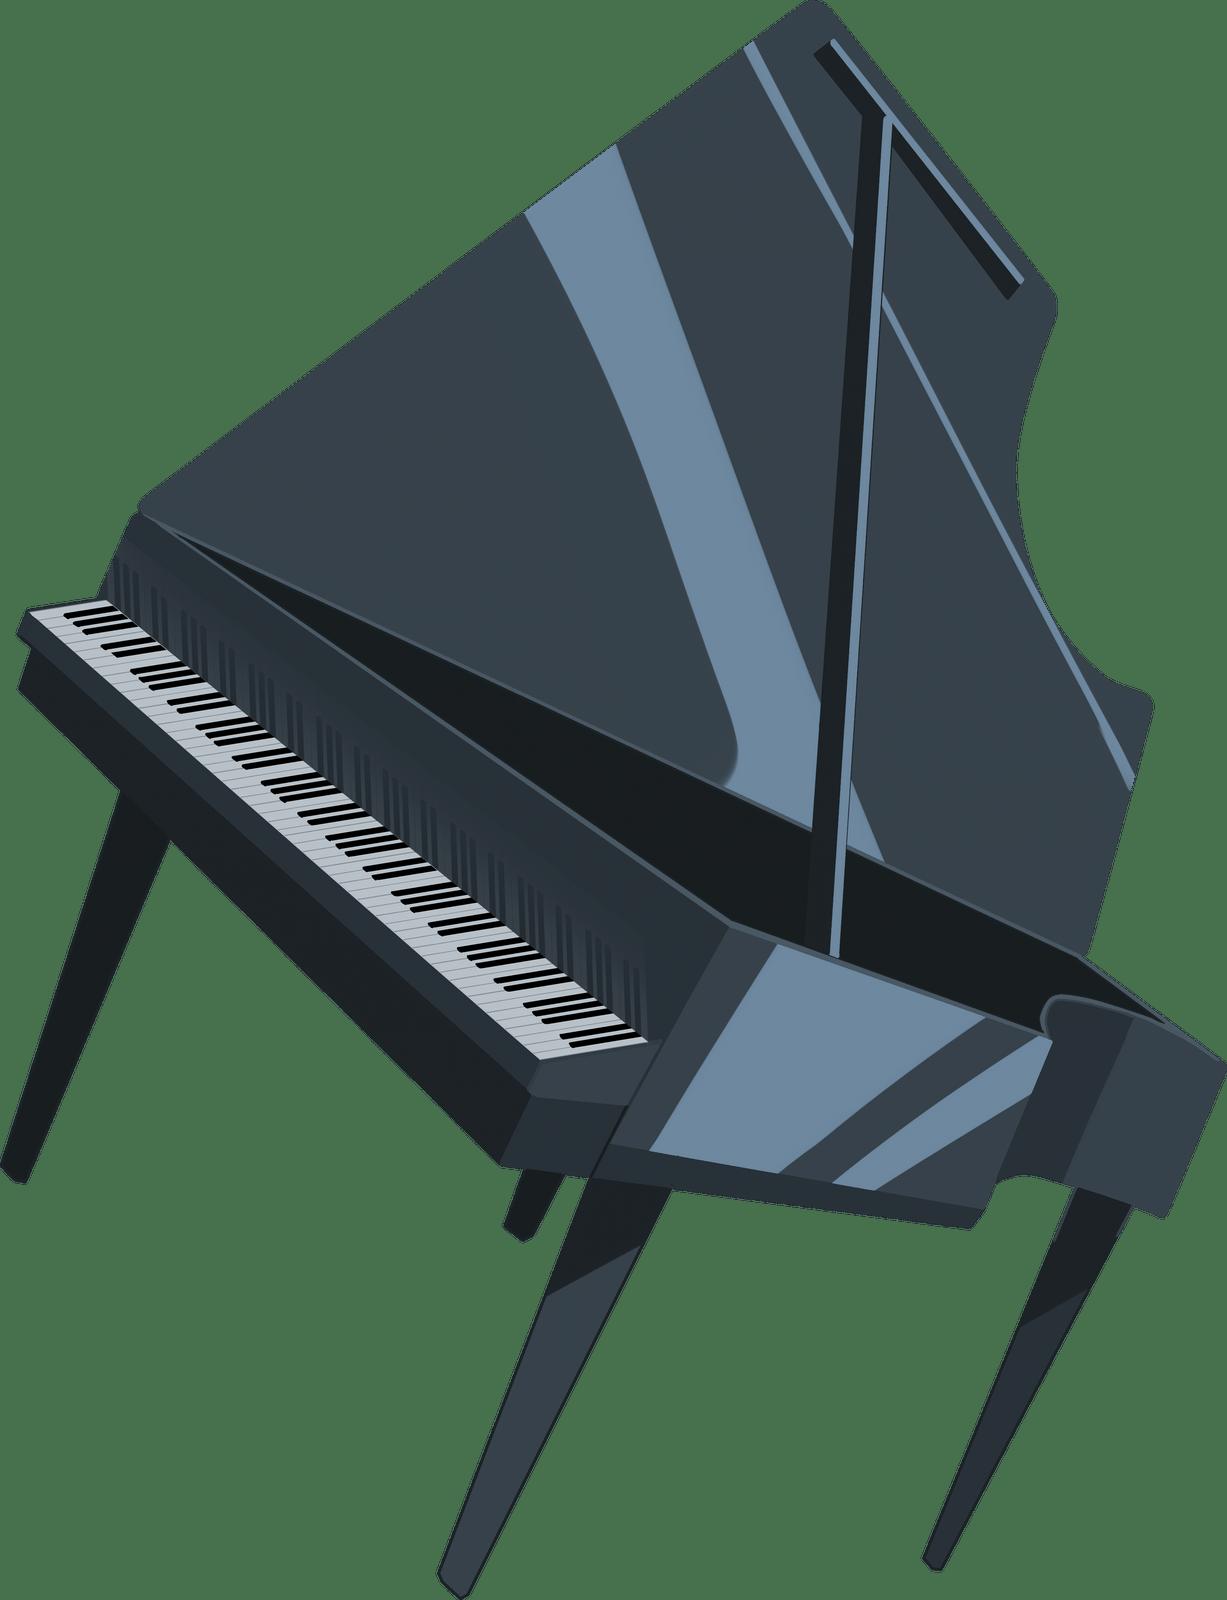 “MARAIS”品牌钢琴蛋糕包装设计 - 视觉同盟(VisionUnion.com)